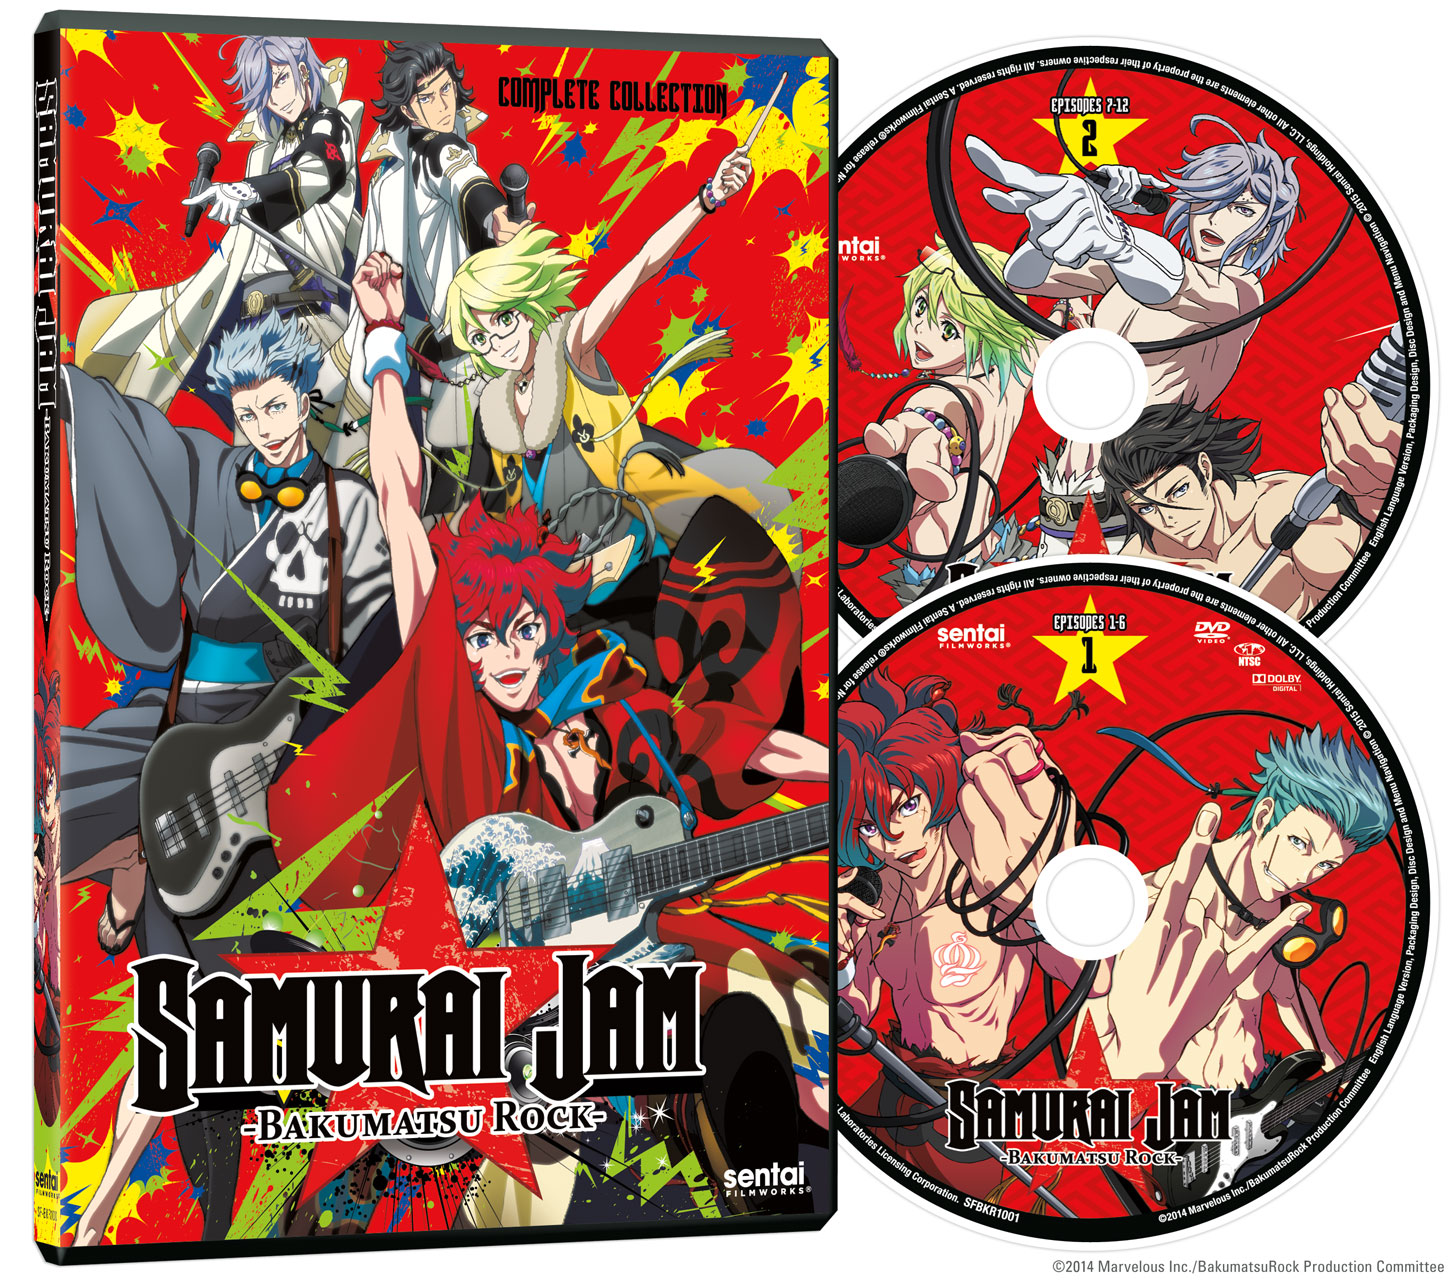 Samurai Jam: Bakumatsu Rock DVD image count 1